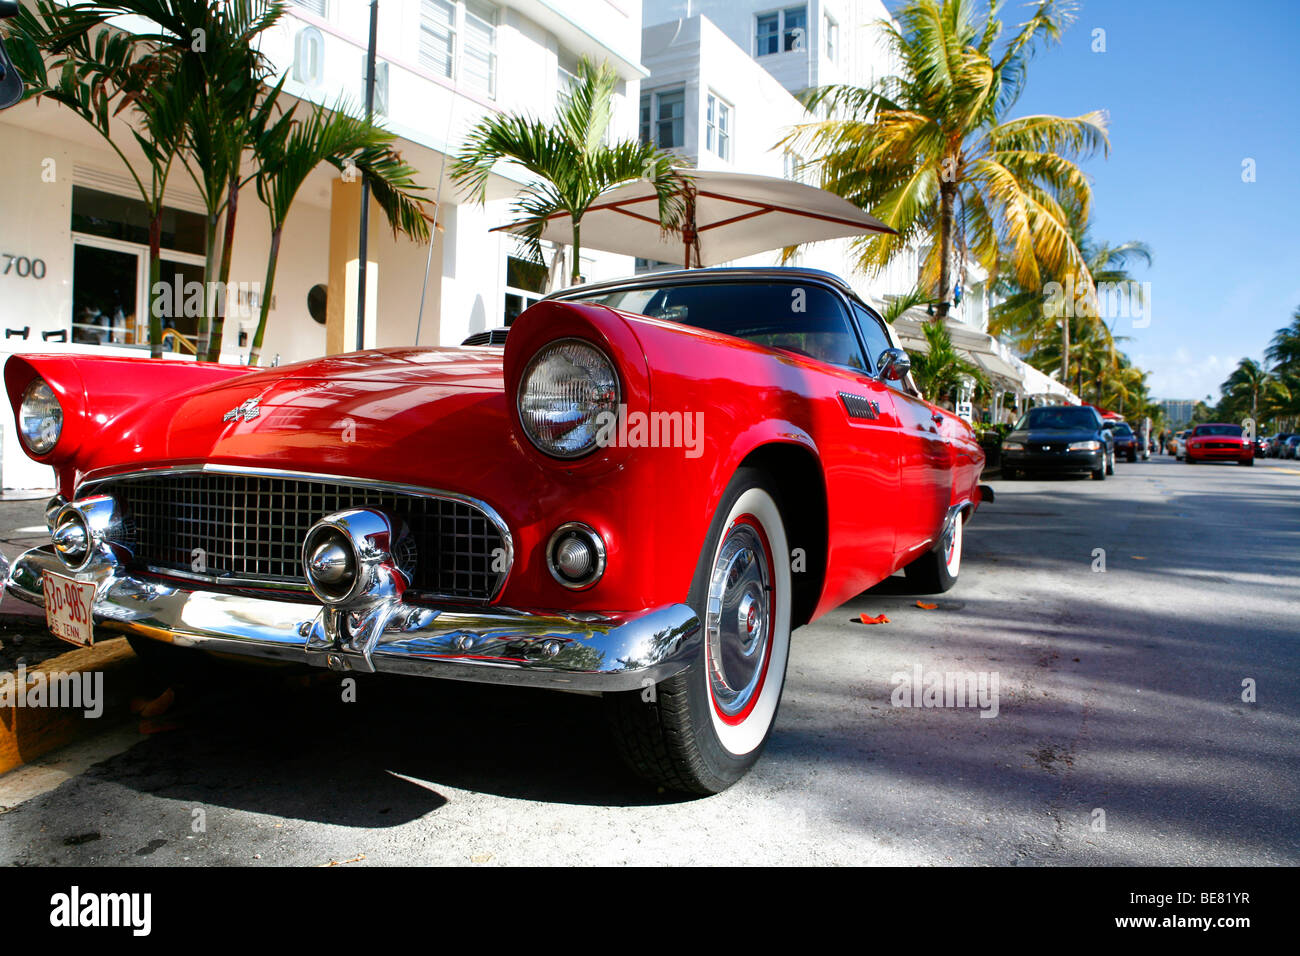 Carro De Miami En Miami Playa Sur Imagen de archivo editorial - Imagen de  florida, districto: 186233069